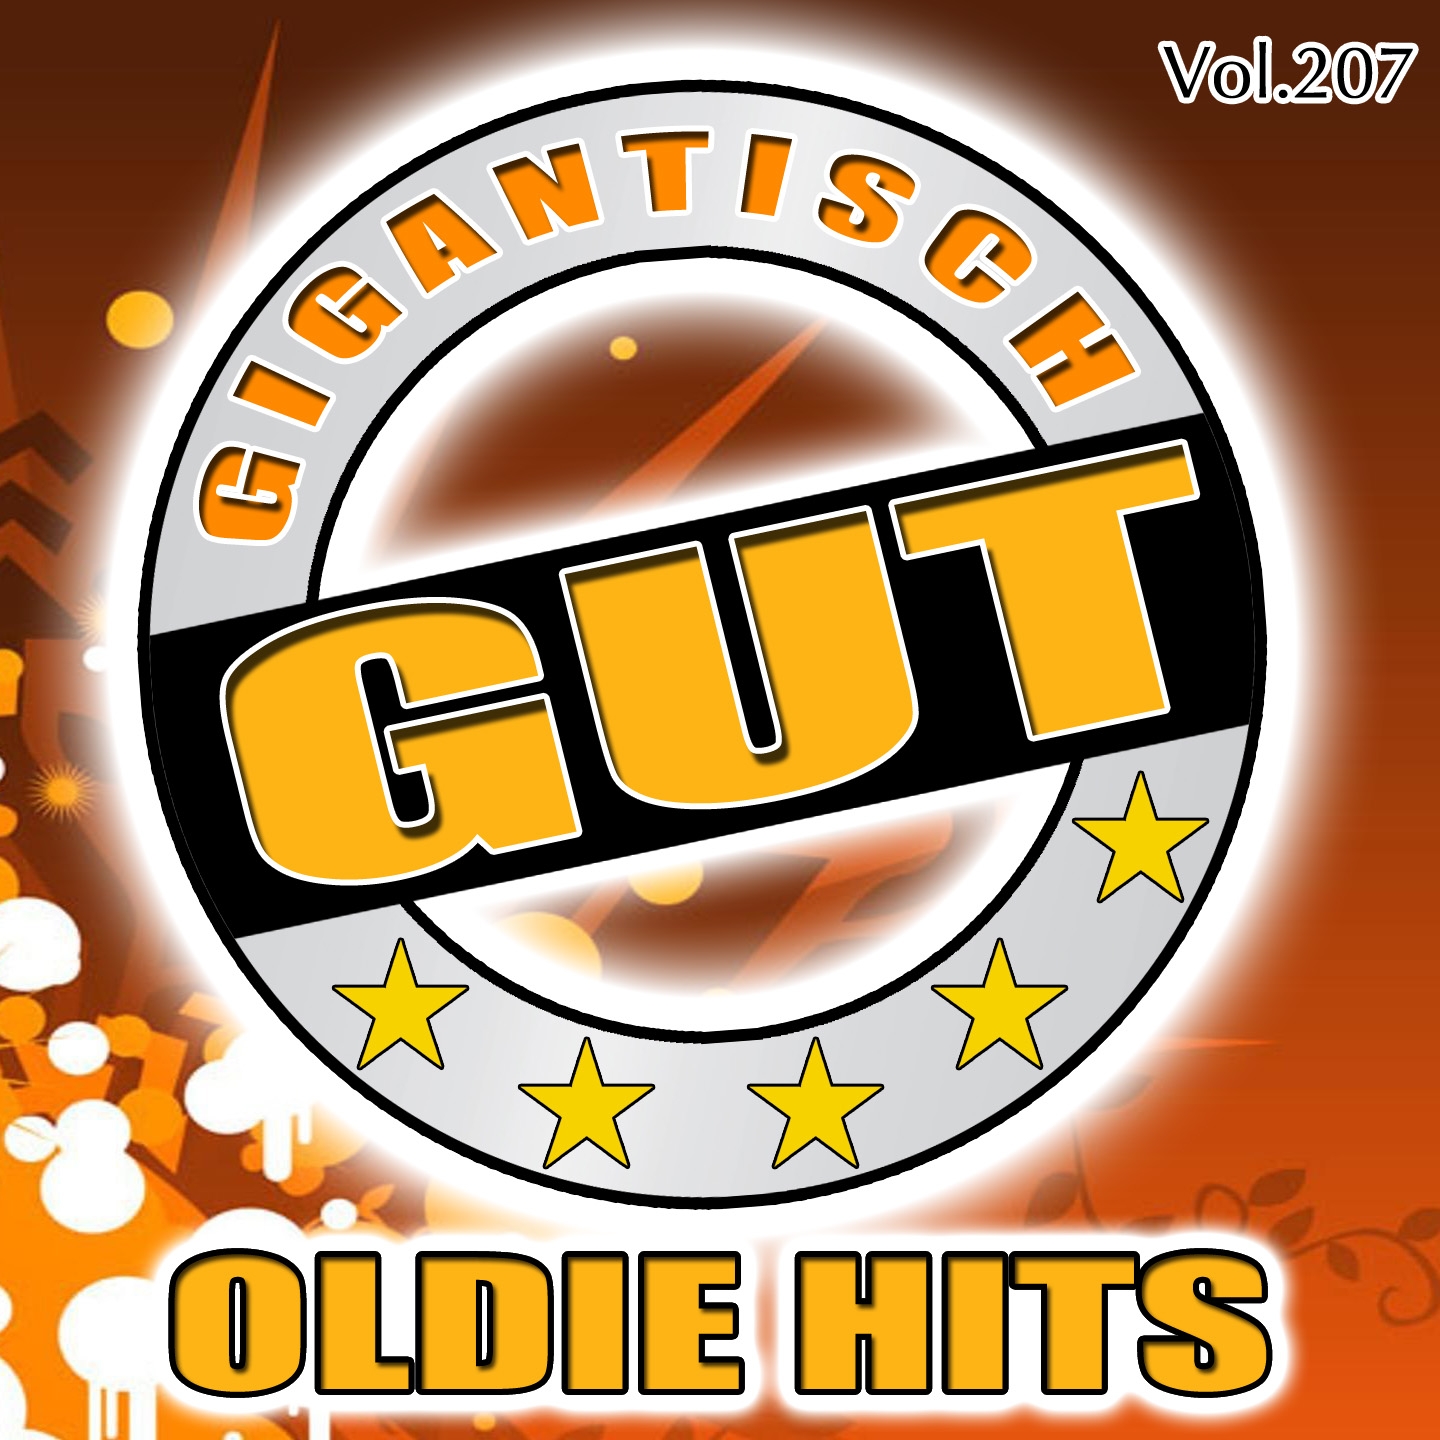 Gigantisch Gut: Oldie Hits, Vol. 207